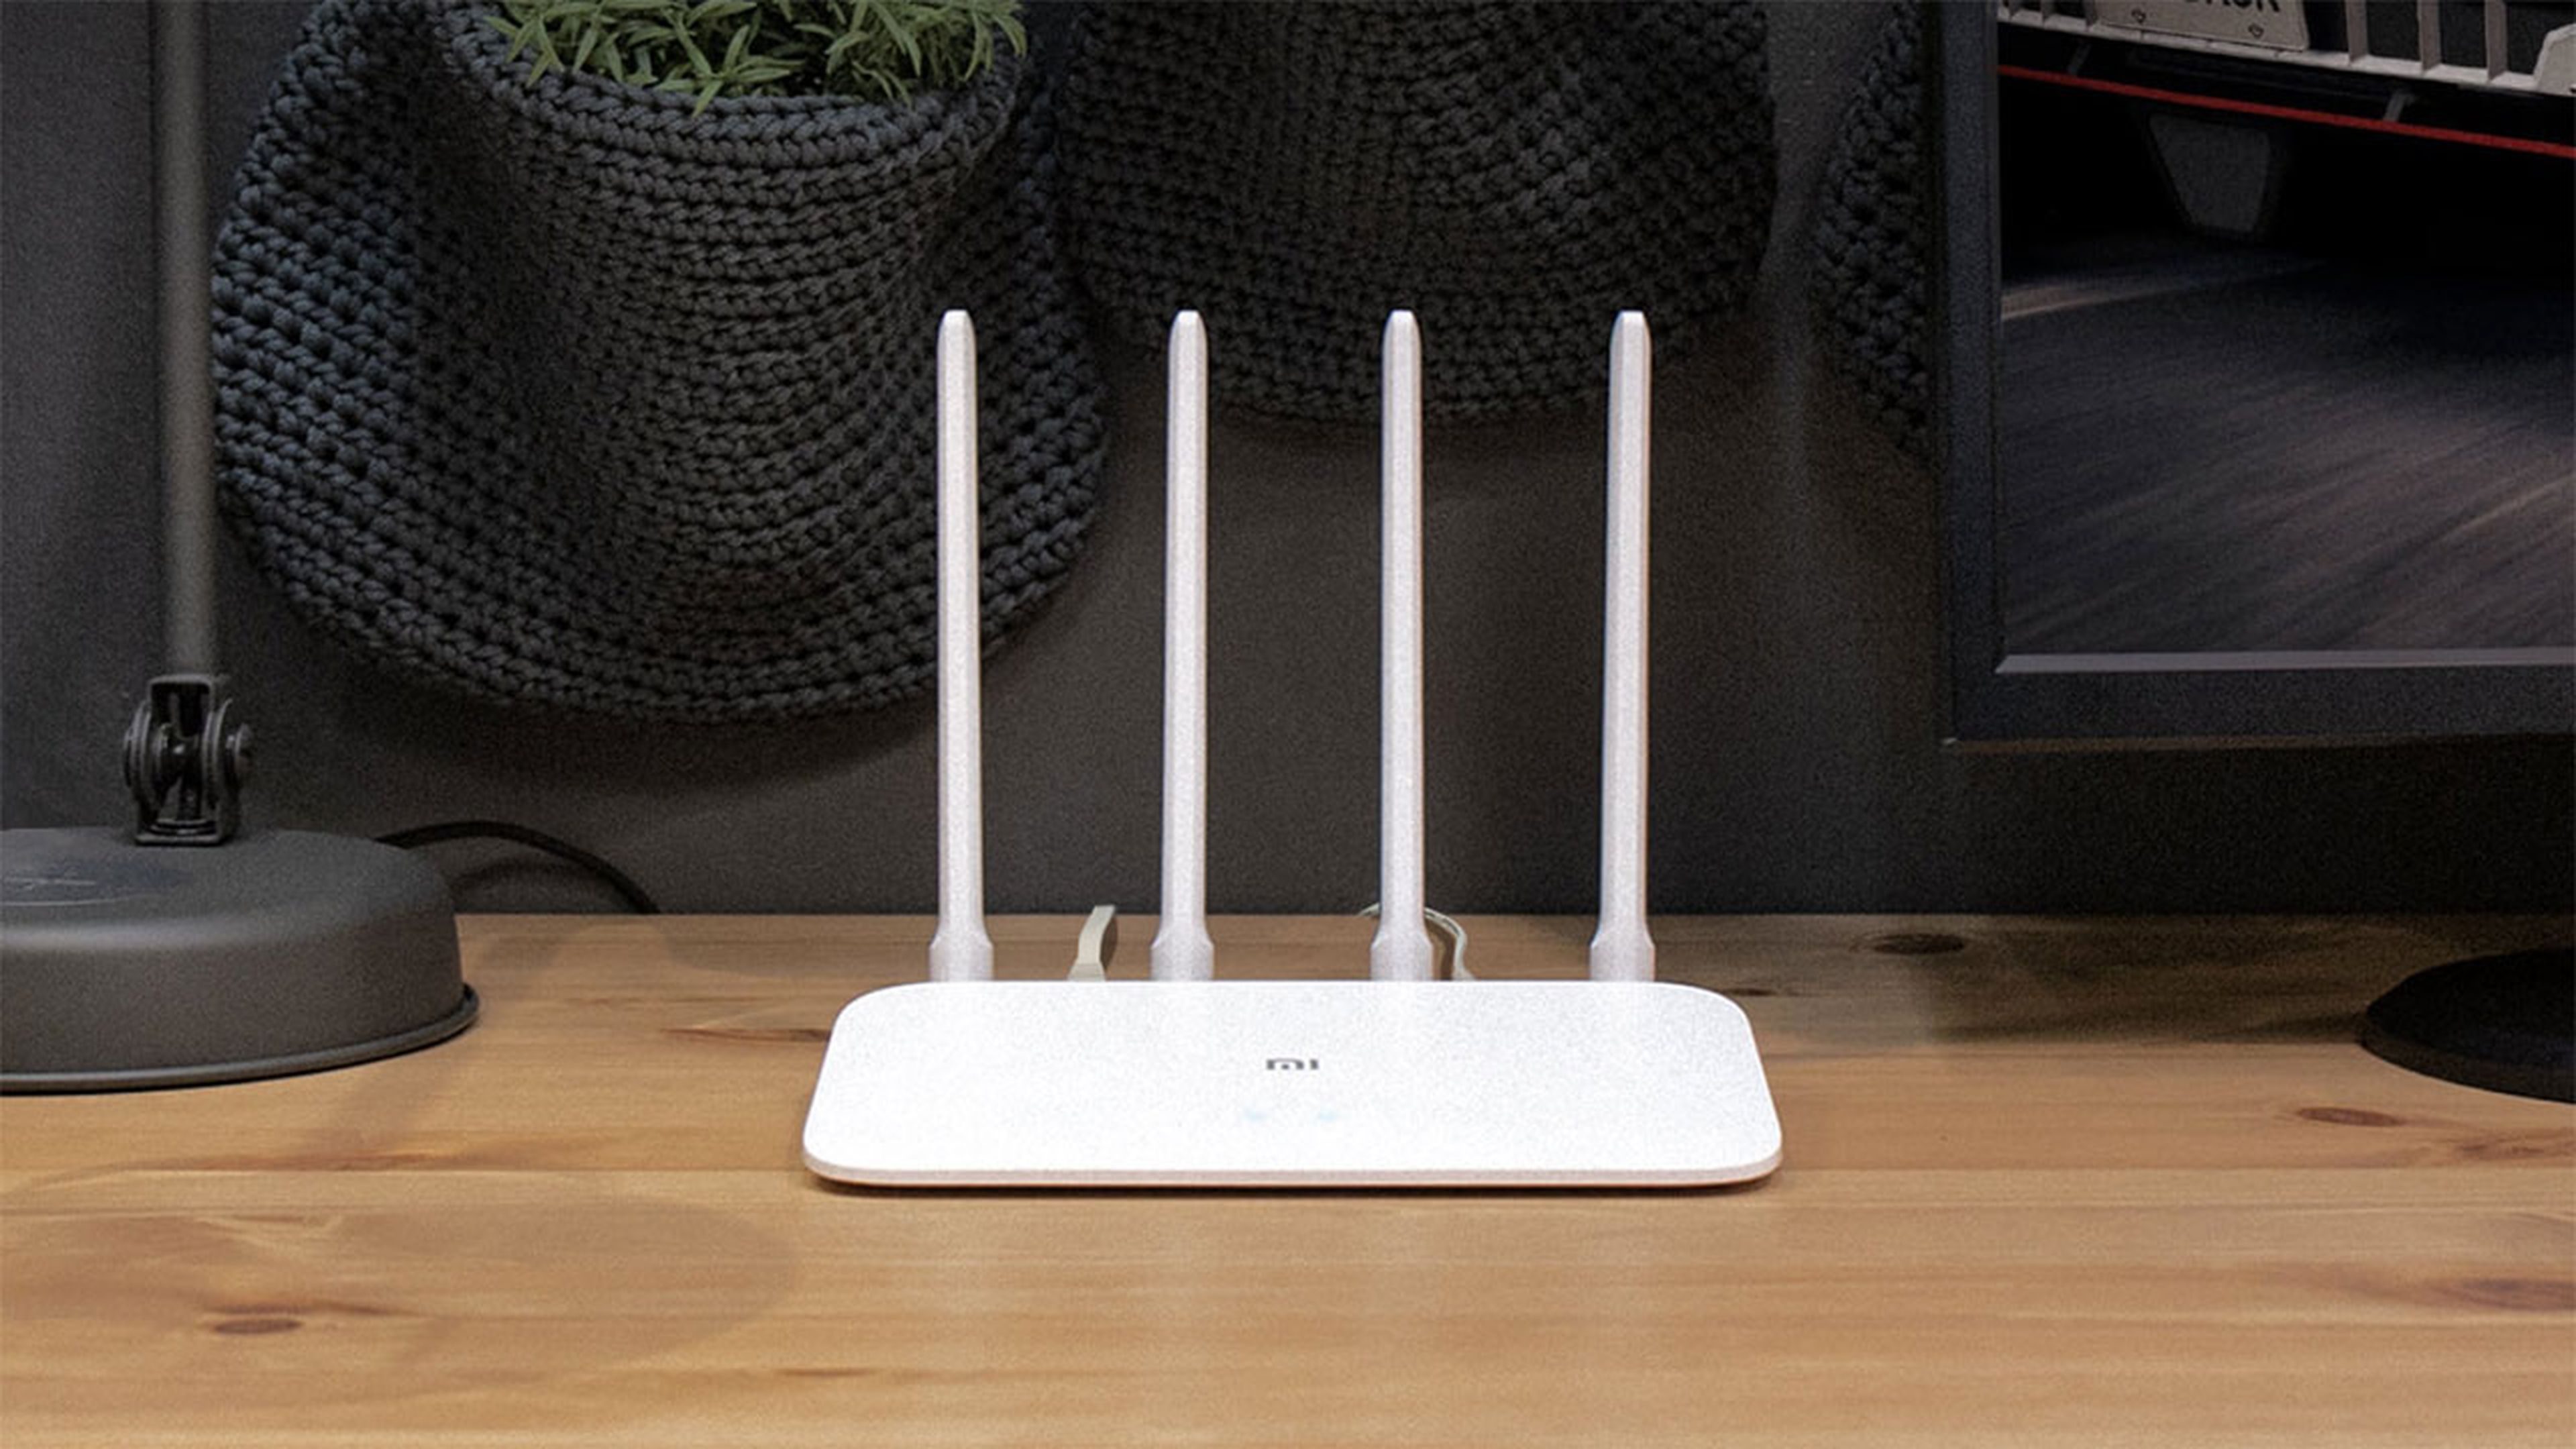 Trucos caseros muy sencillos para mejorar de inmediato (y sin gastar un  euro) la señal WiFi de tu casa